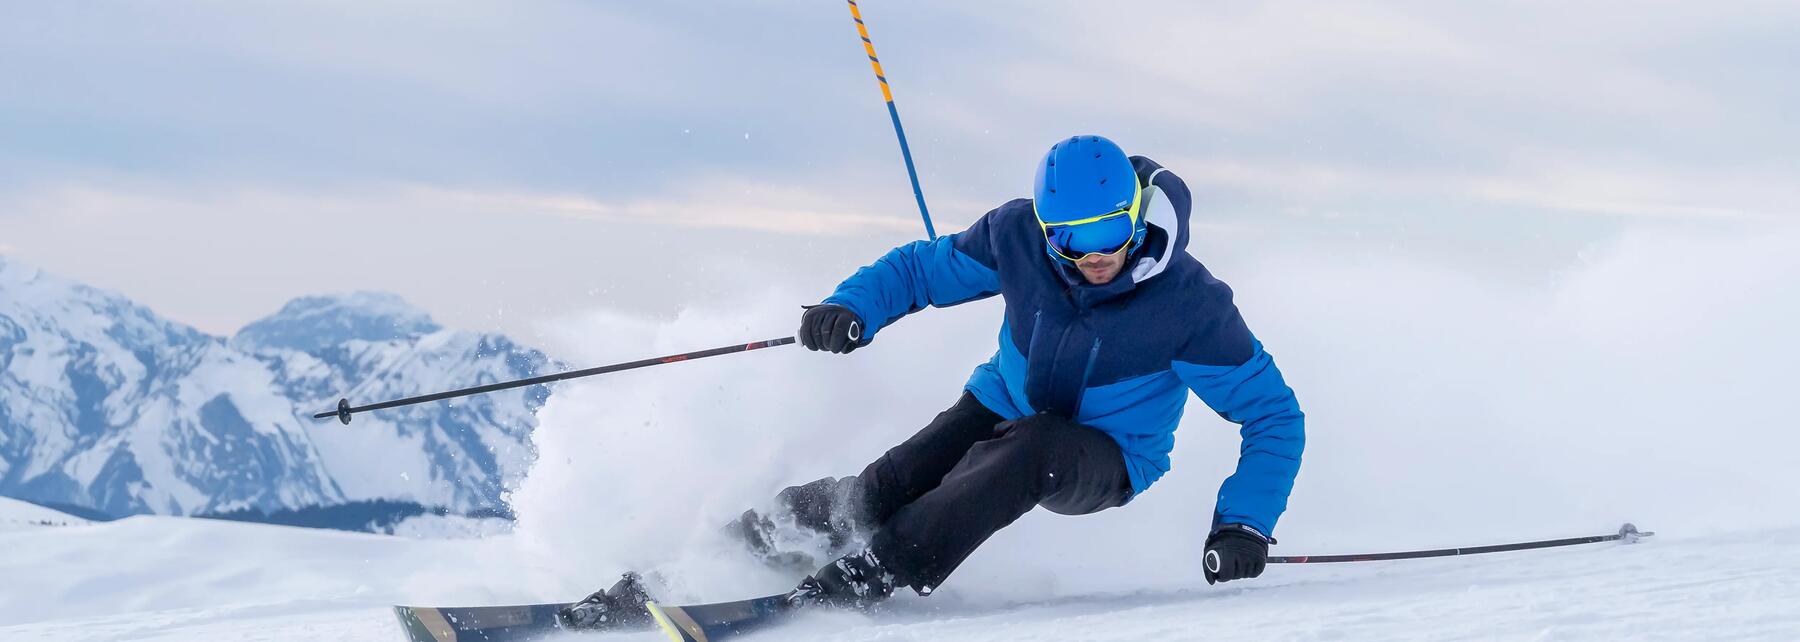 Ski Alpin : les 6 disciplines officielles